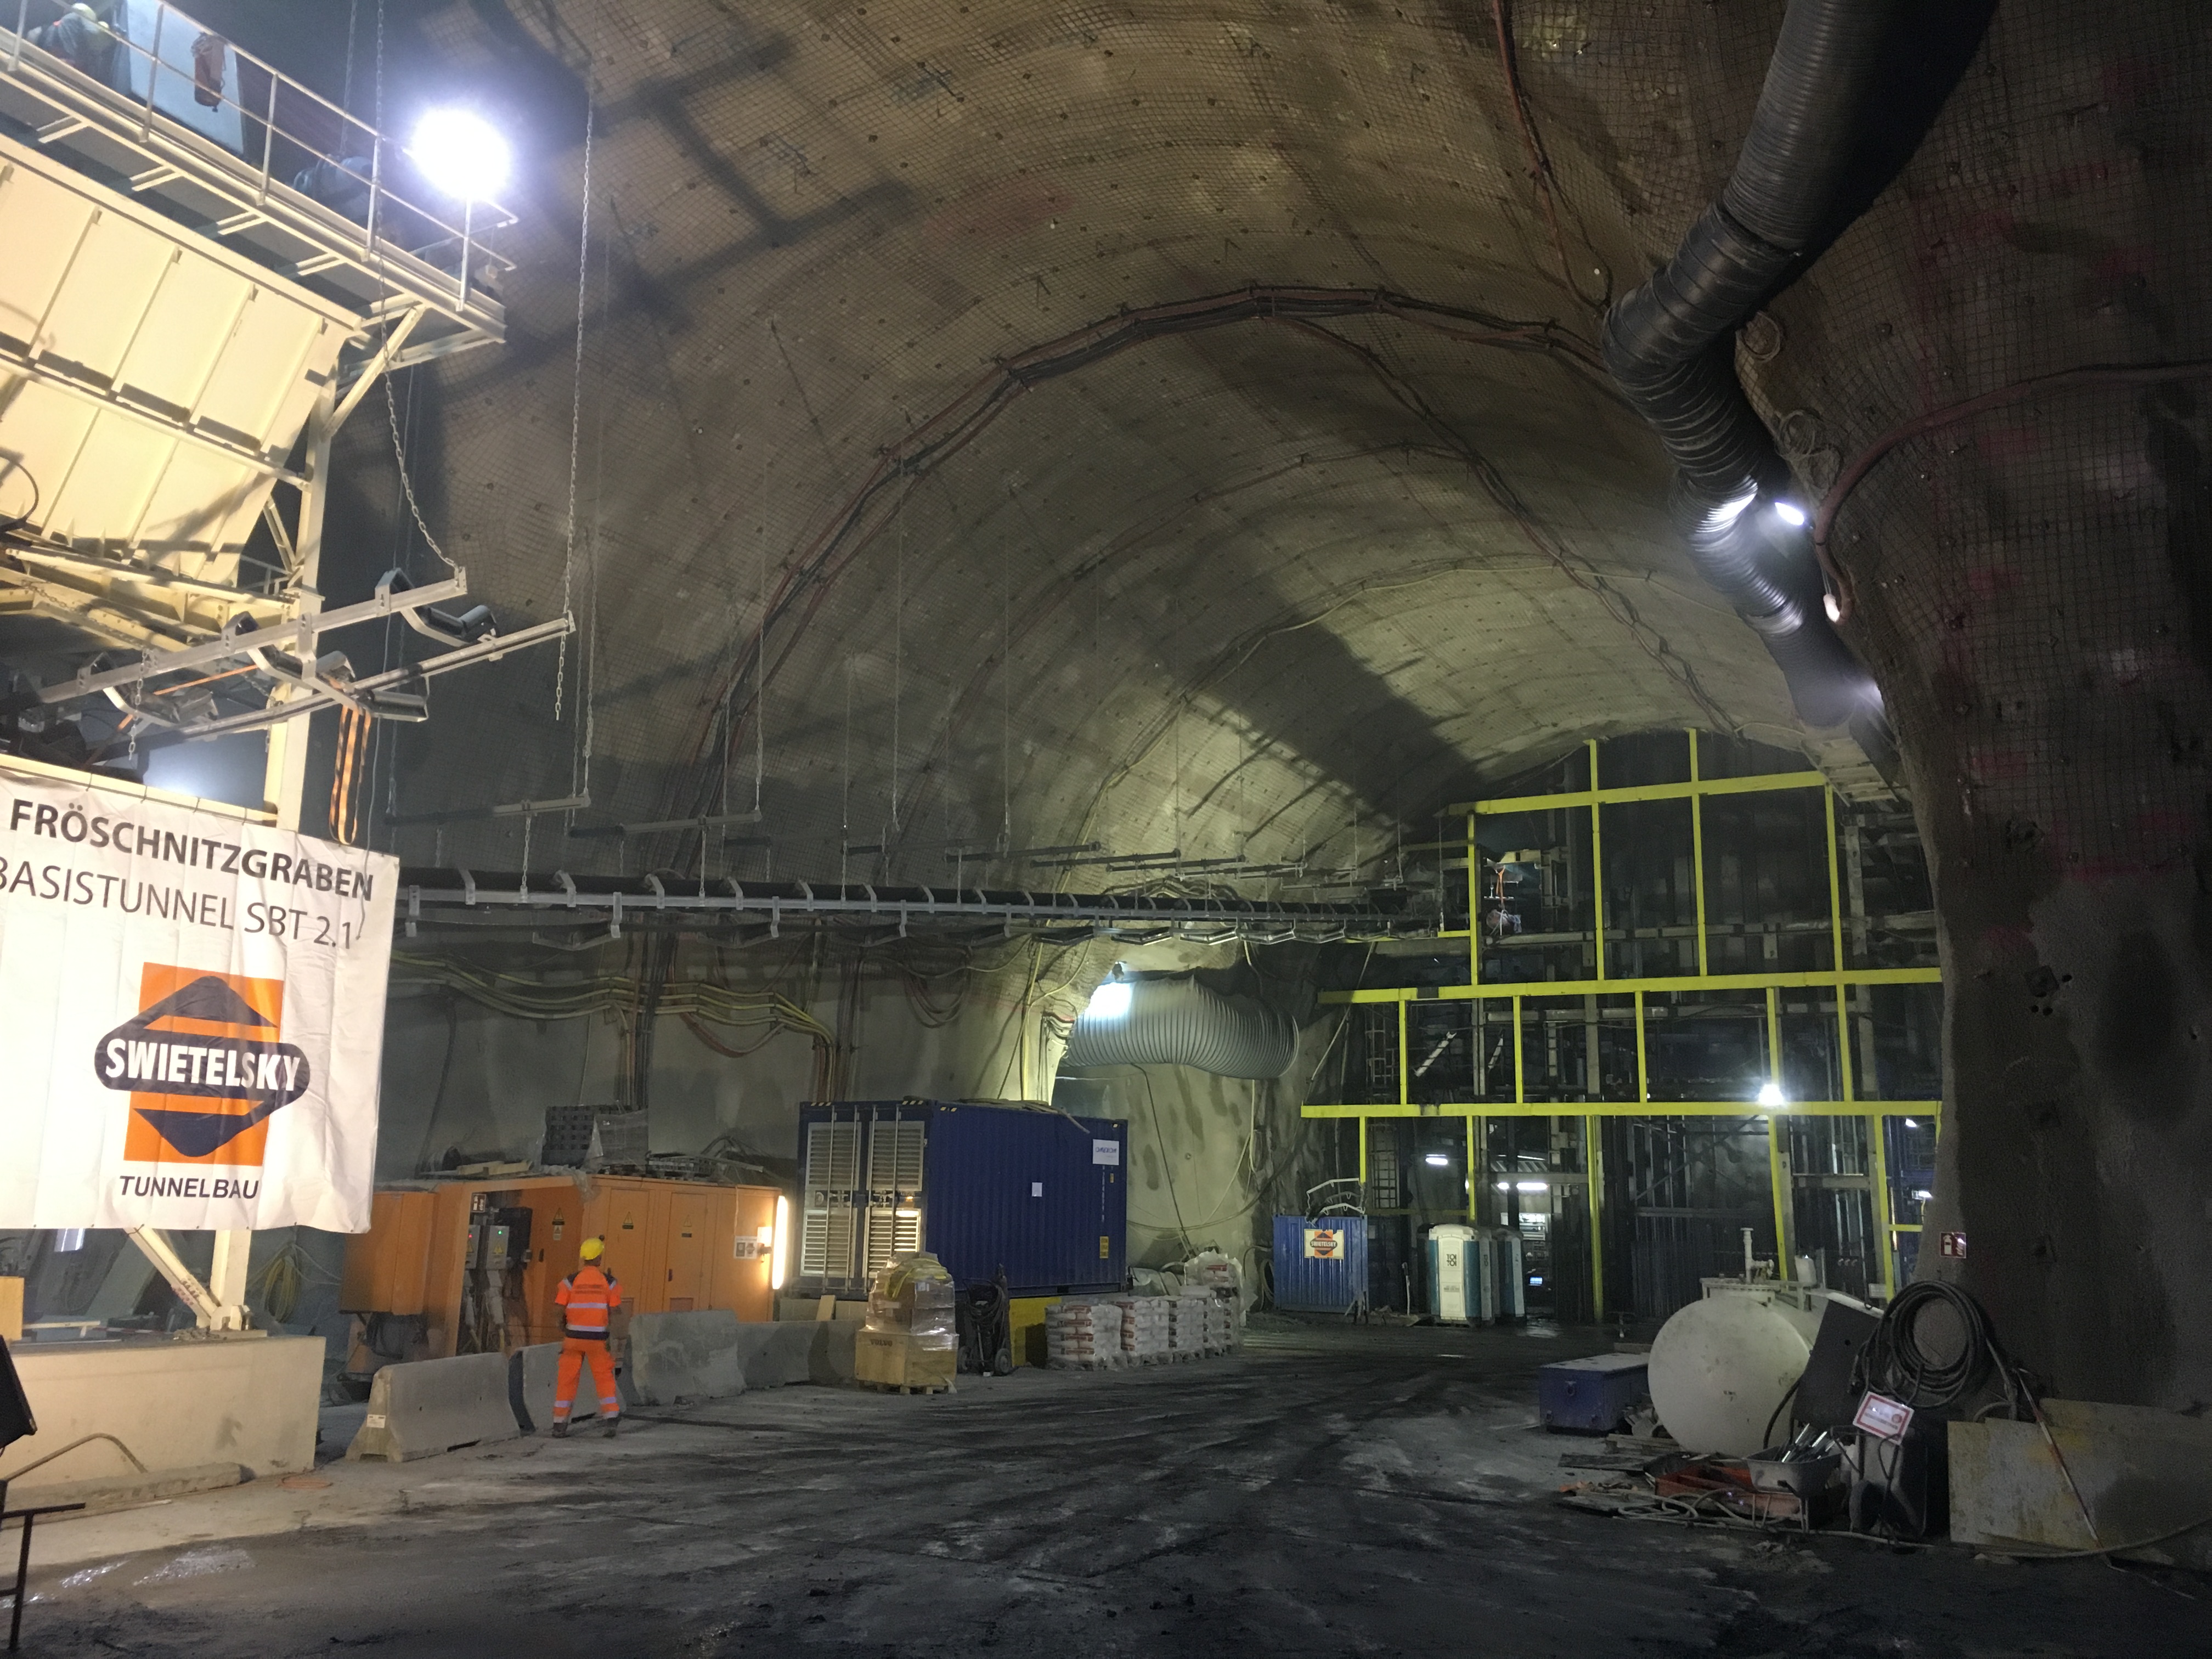 Semmering Basistunnel - SBT 2.1 Fröschnitzgraben - Costruzione di gallerie